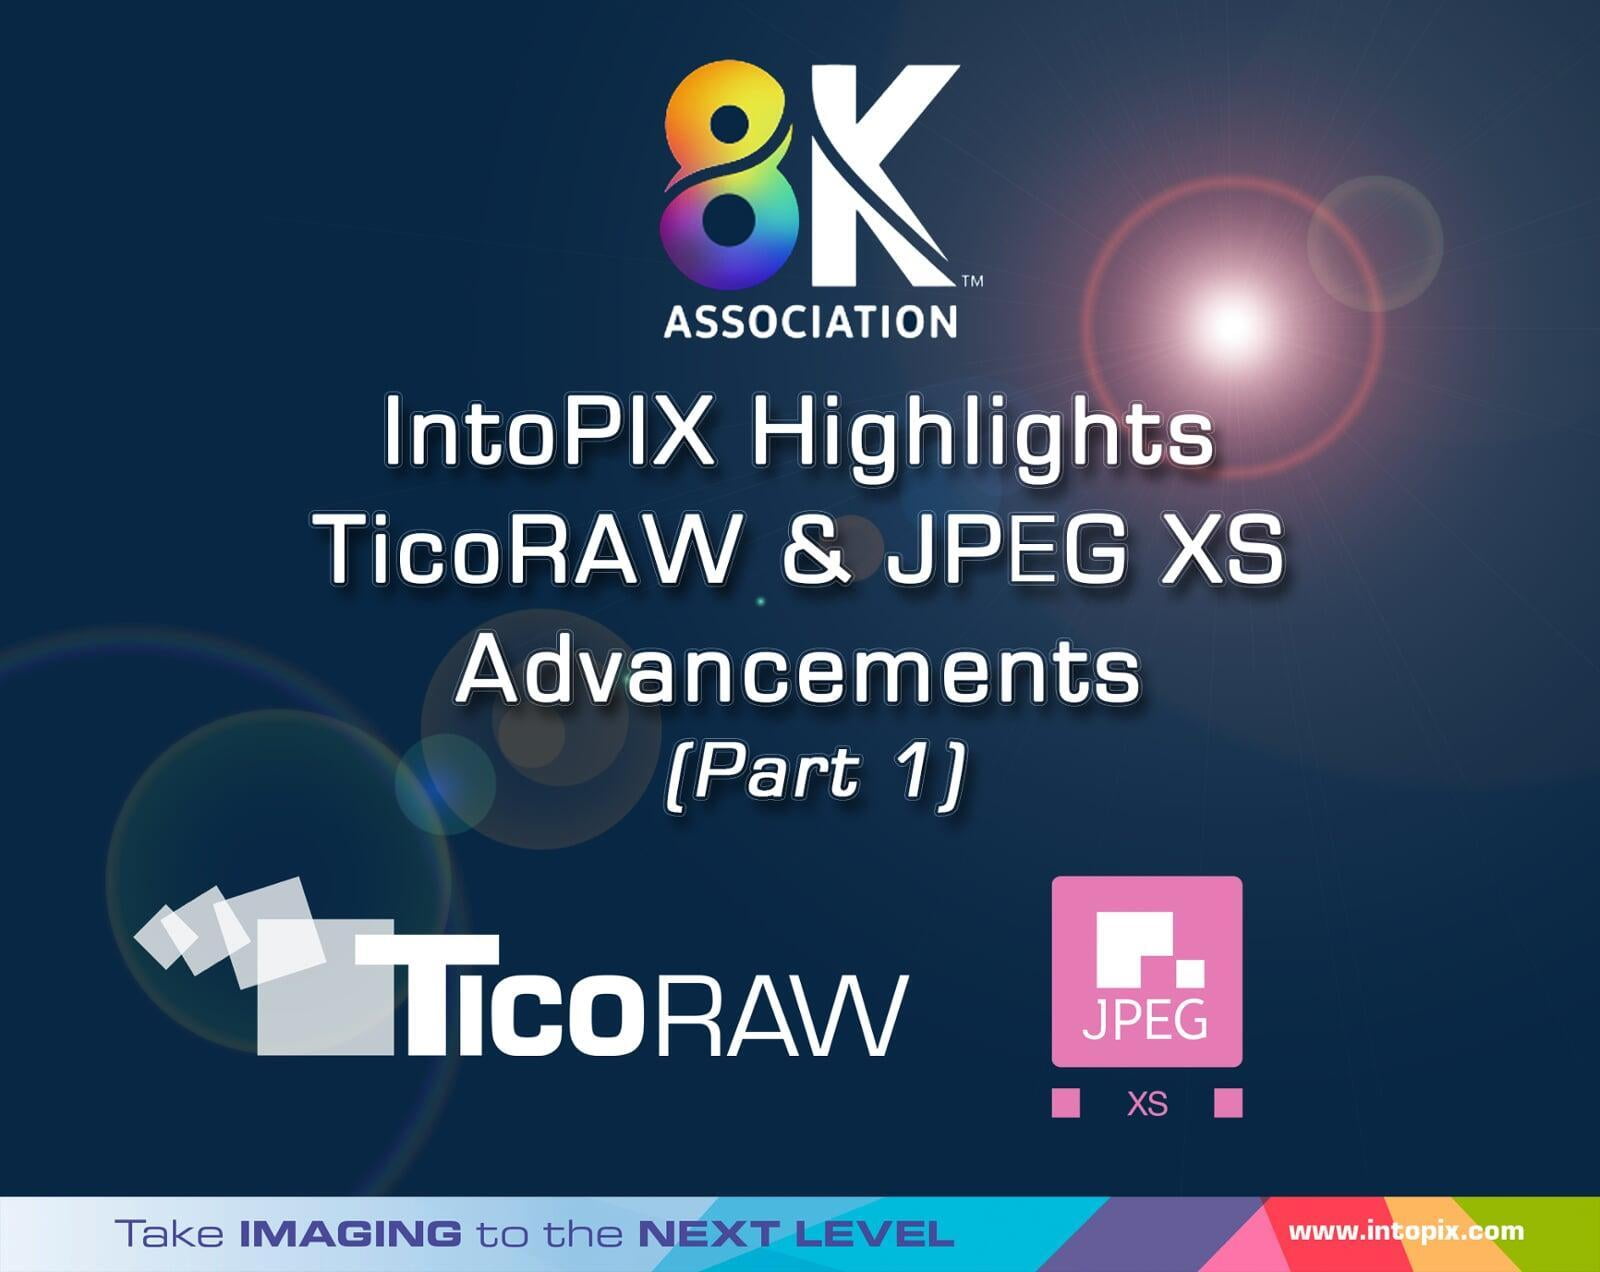 8K 협회: IntoPIX, TicoRAW 및 JPEG XS 개선 사항 강조 (1부) 